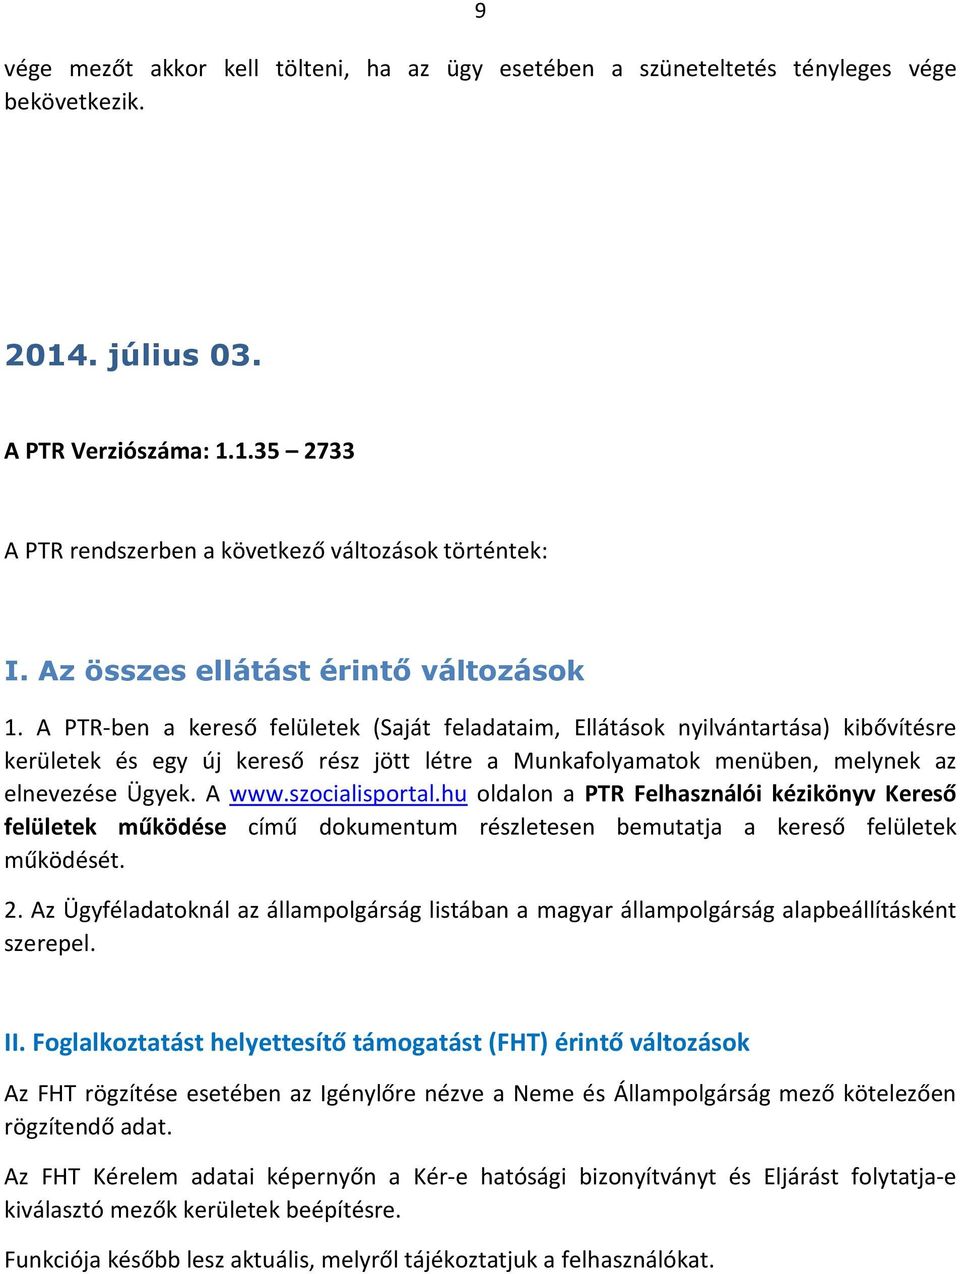 szocialisportal.hu oldalon a PTR Felhasználói kézikönyv Kereső felületek működése című dokumentum részletesen bemutatja a kereső felületek működését. 2.